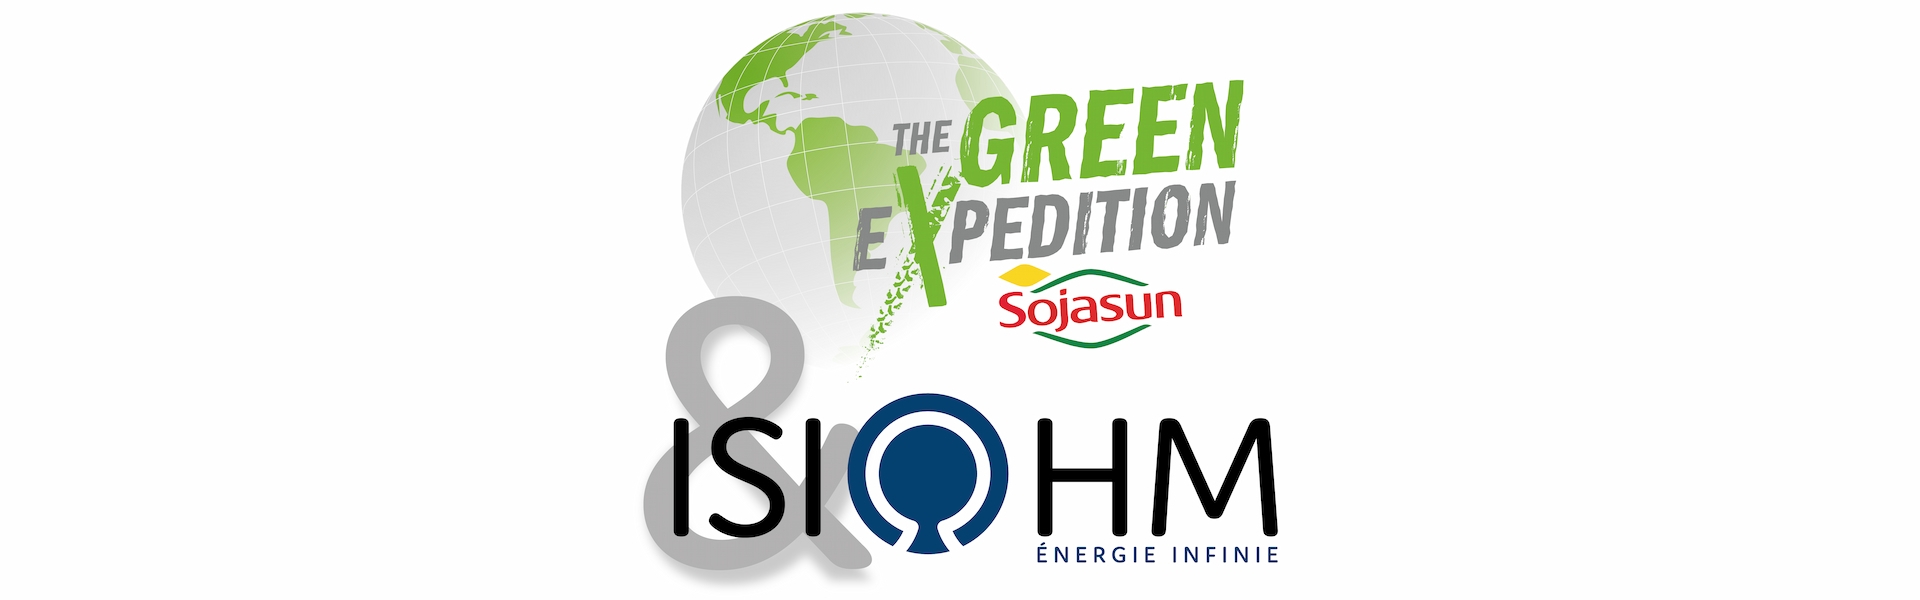 The Green Expedition - Sojasun : Road Trip en véhicules électriques !